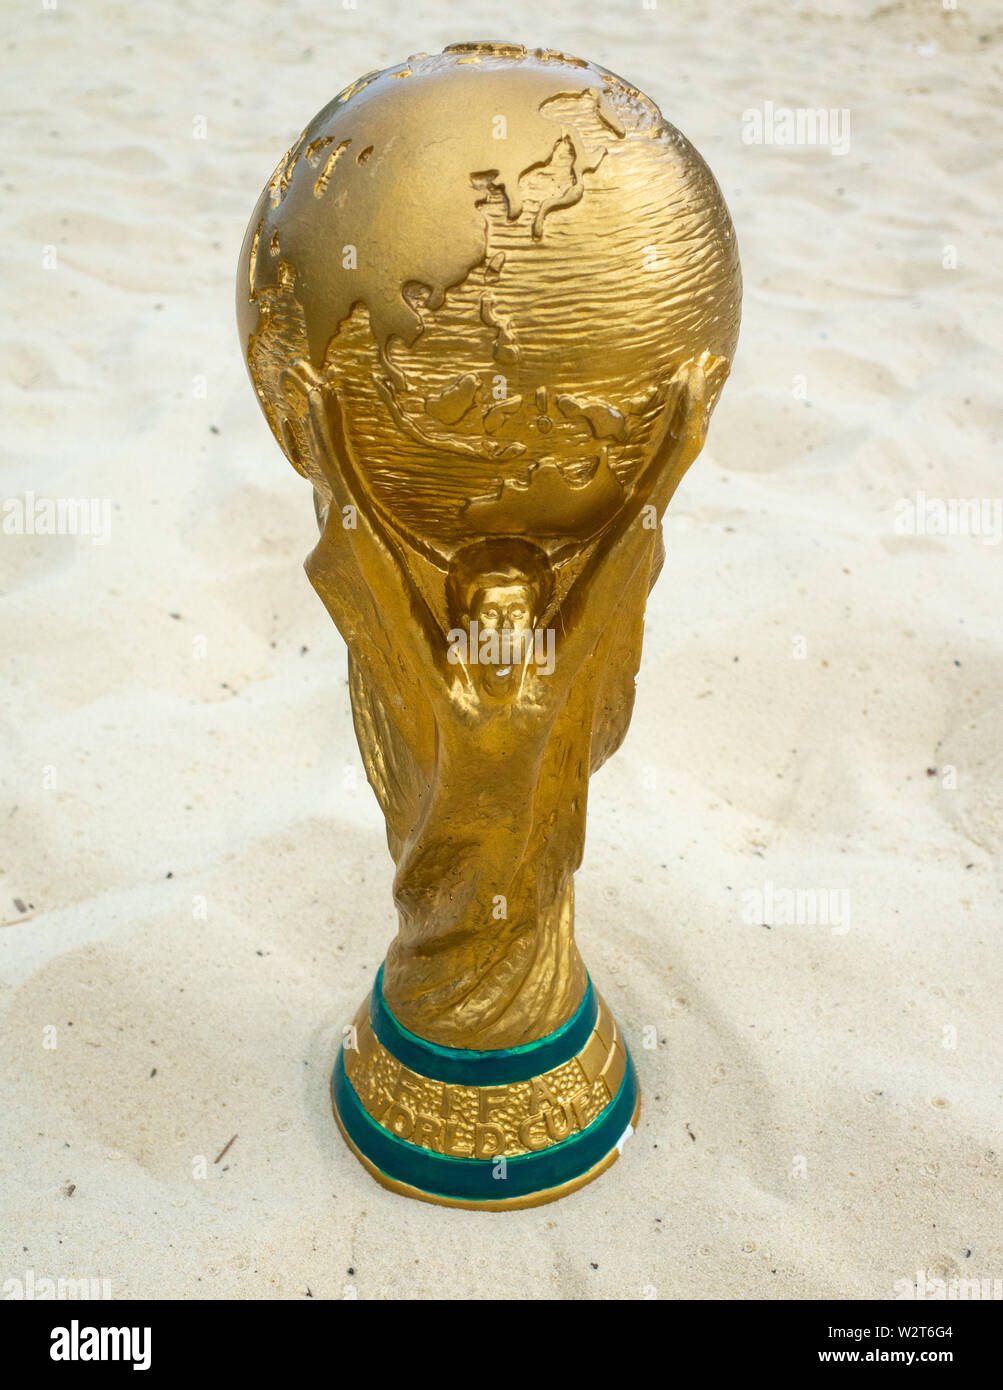 Le 30 mai 2019. Doha, Qatar. Trophée de la Coupe du Monde de la FIFA sur le sable. Coupe du Monde FIFA 2022 se tiendra au Qatar. Banque D'Images